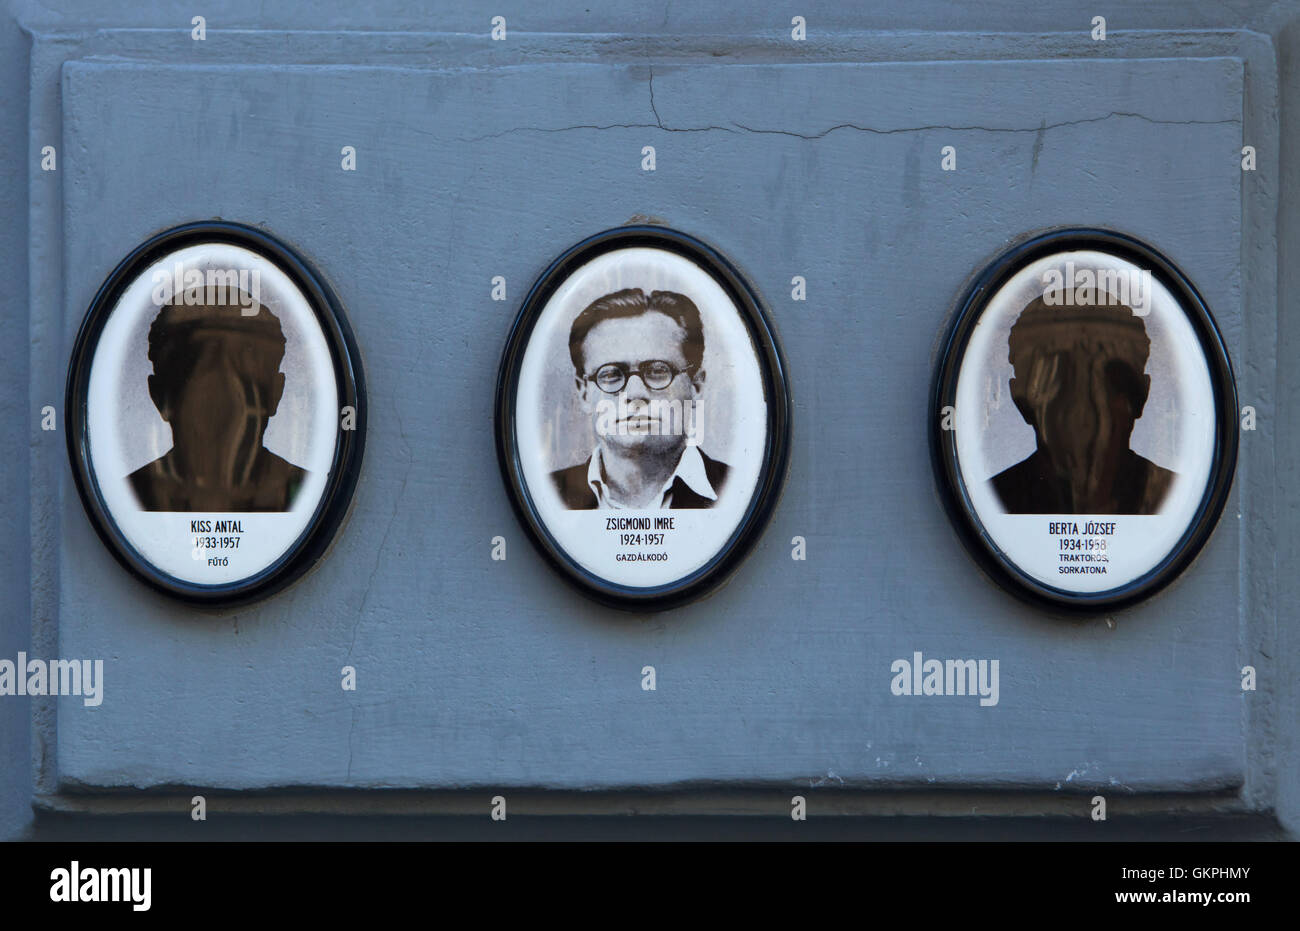 I ritratti delle vittime del regime comunista al di fuori della Casa del Terrore Budapest, Ungheria. Agricoltore Imre Zsigmond (1924-1957) è raffigurato al centro mentre il riscaldamento Antal Kiss (1933-1957), e soldato e camionista Jozsef Berta (1934-1958) non hanno le fotografie. Foto Stock